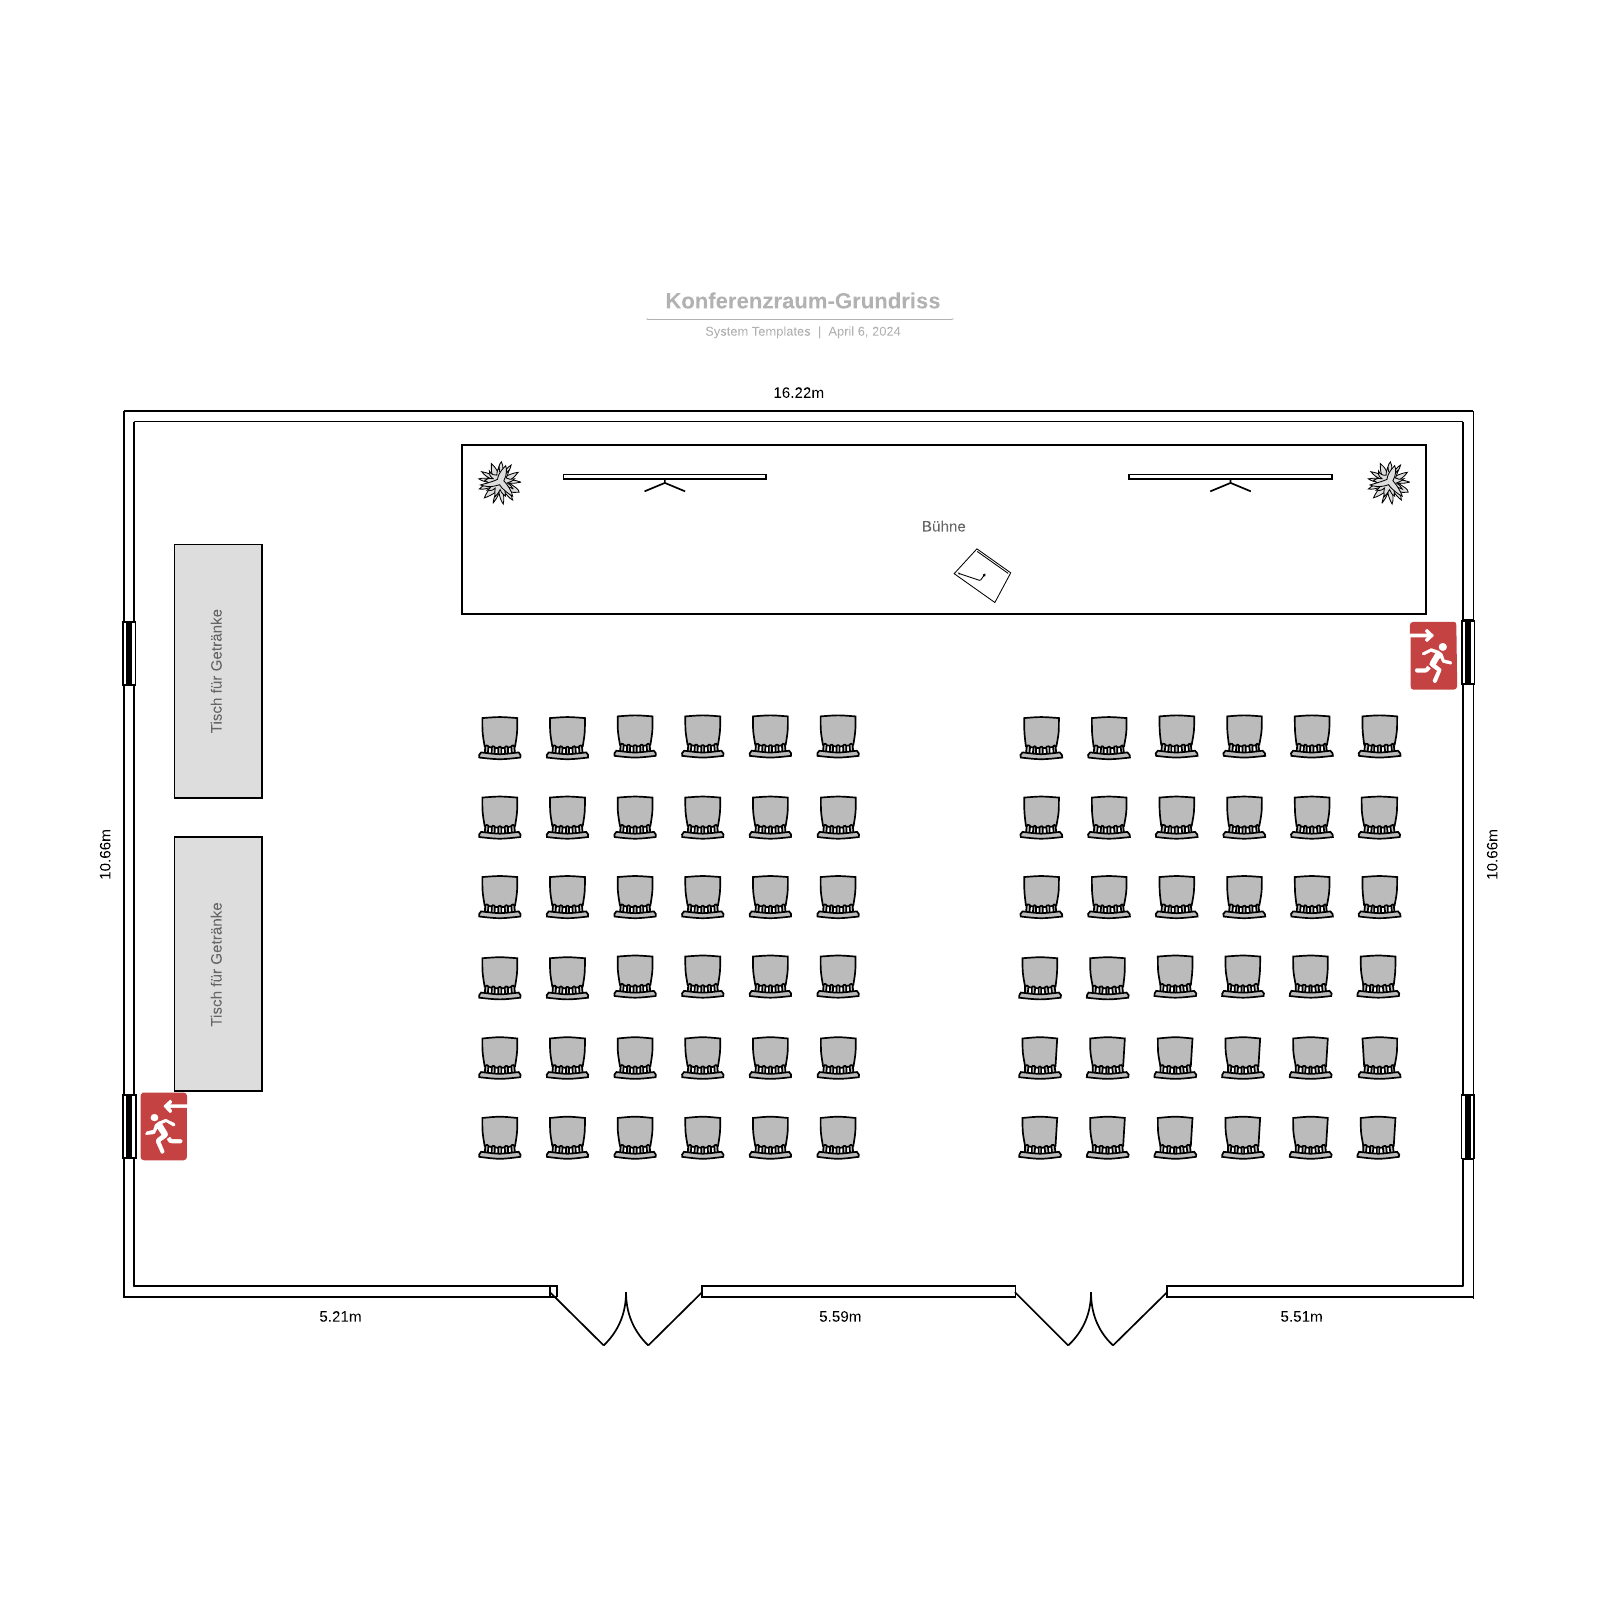 Konferenzraum-Grundriss - Beispiel